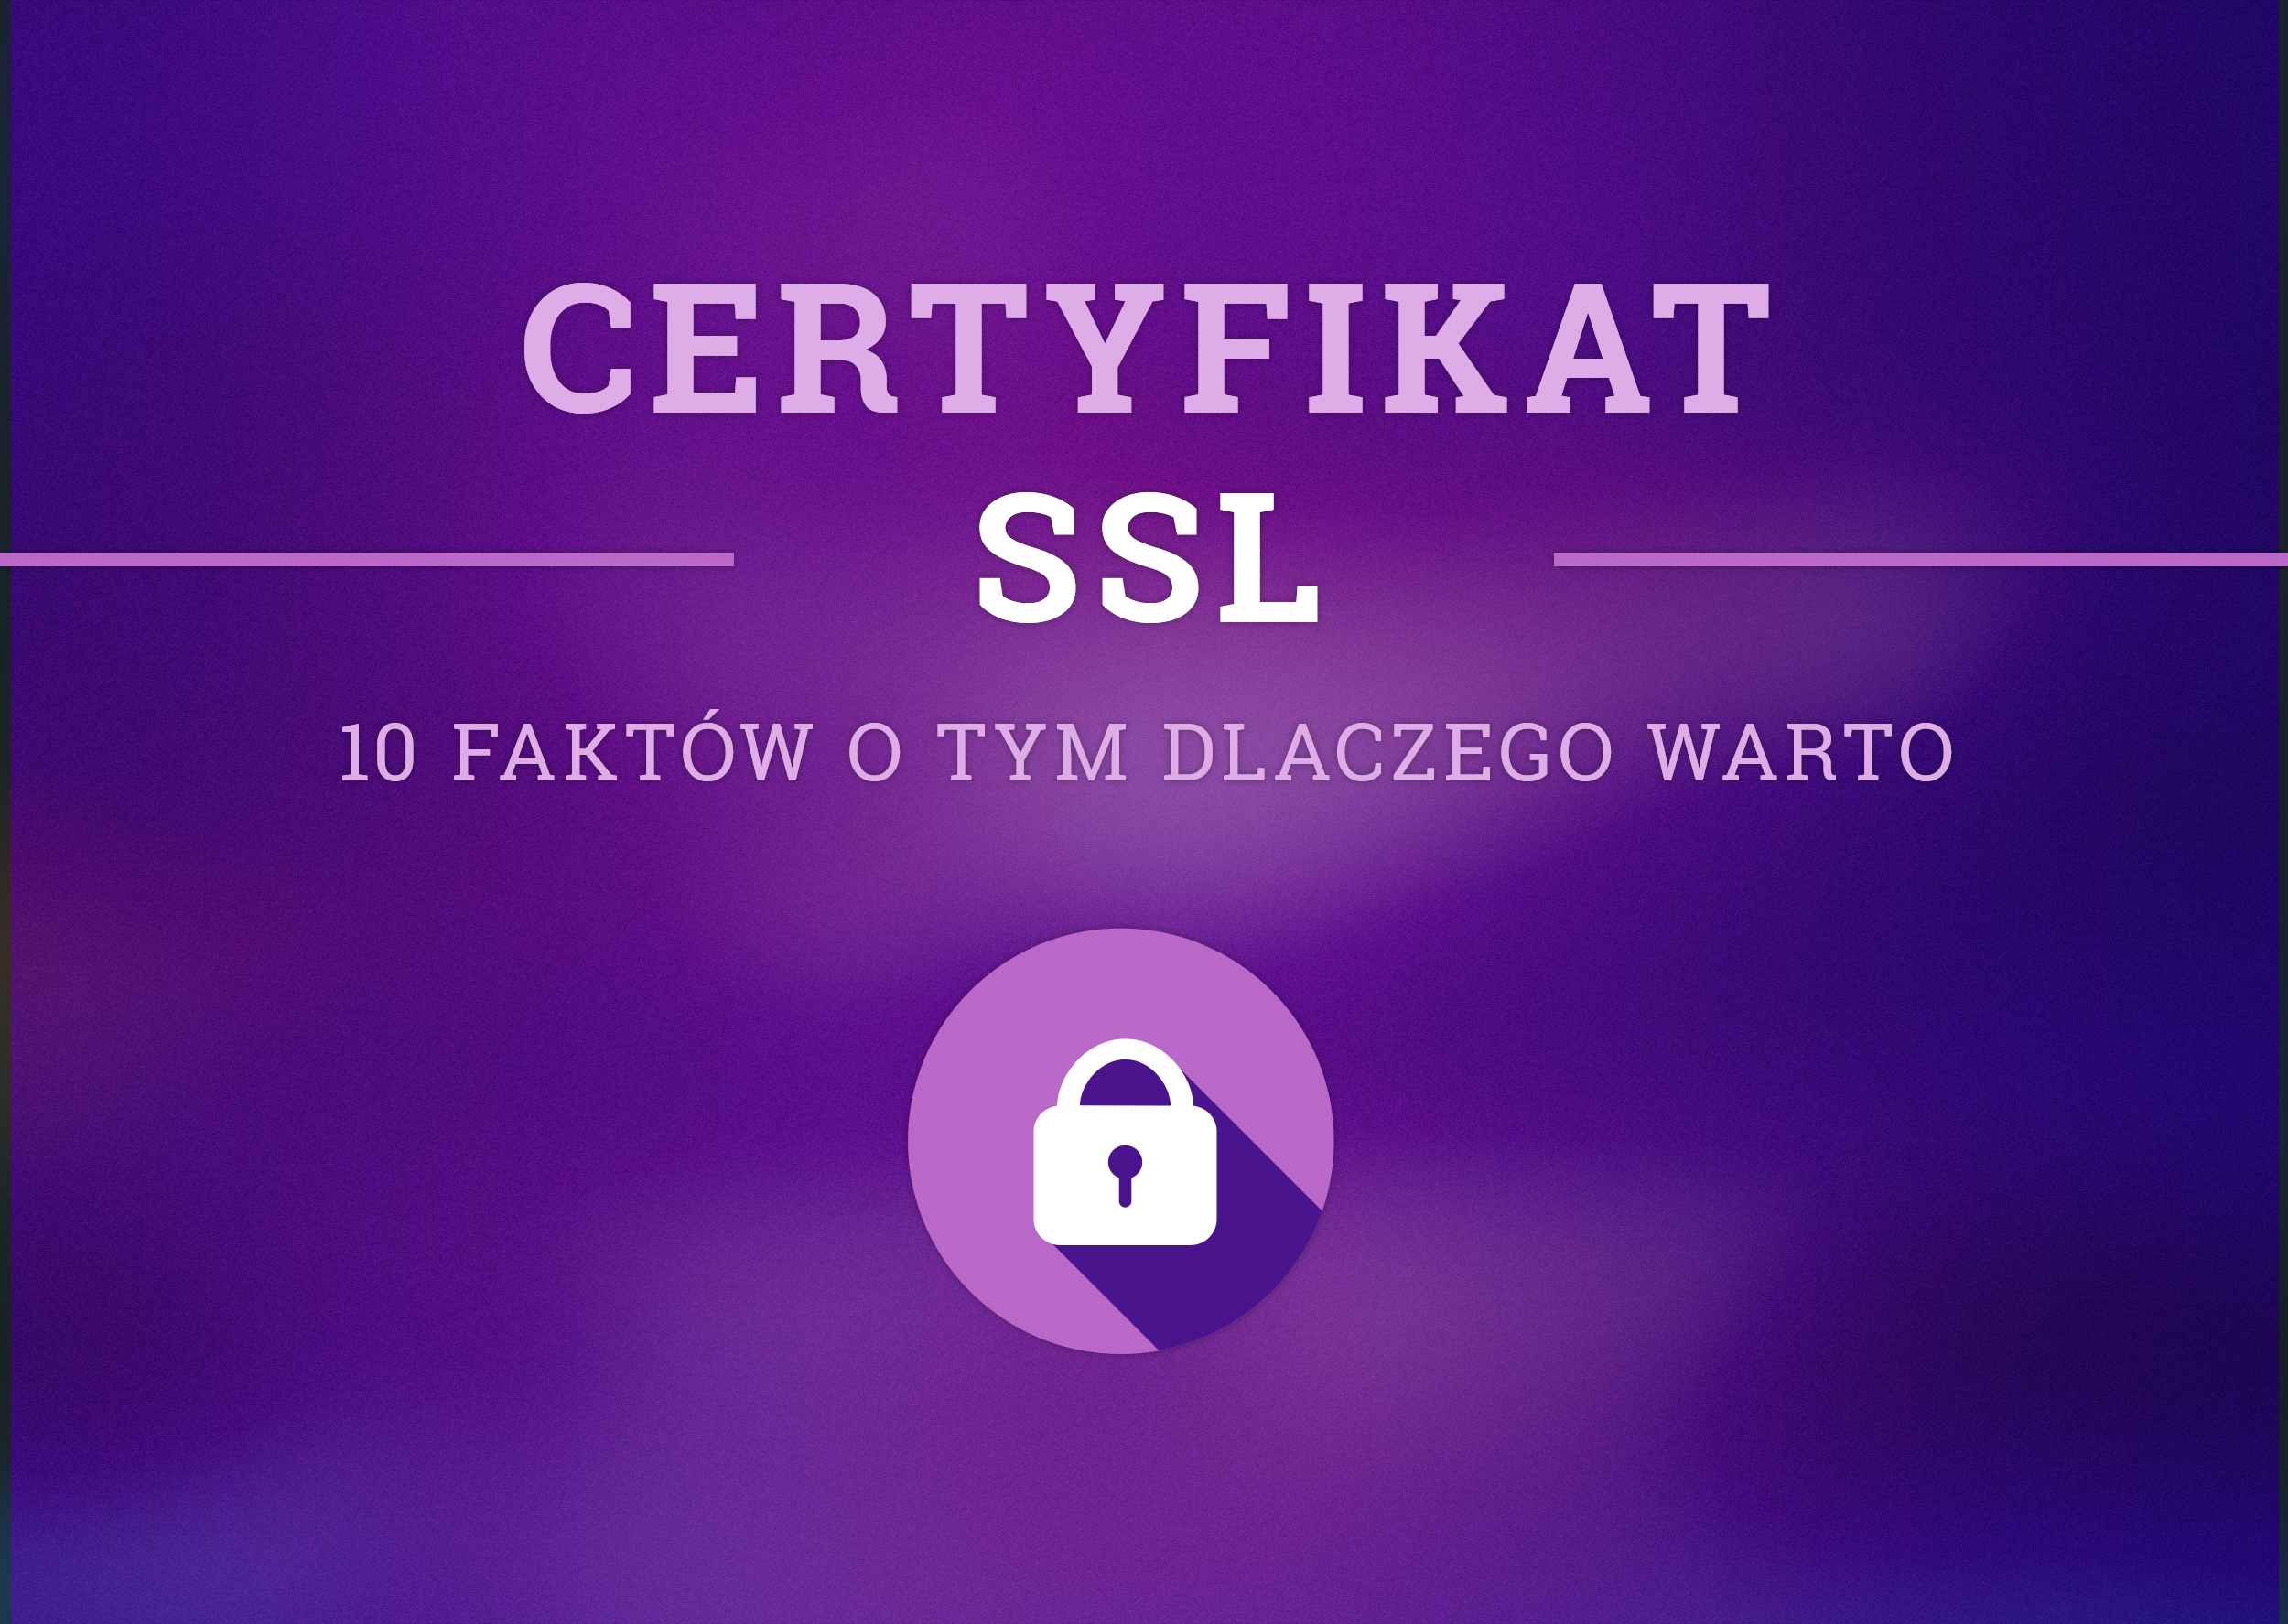 Certyfikat SSL - 10 faktów o tym dlaczego warto